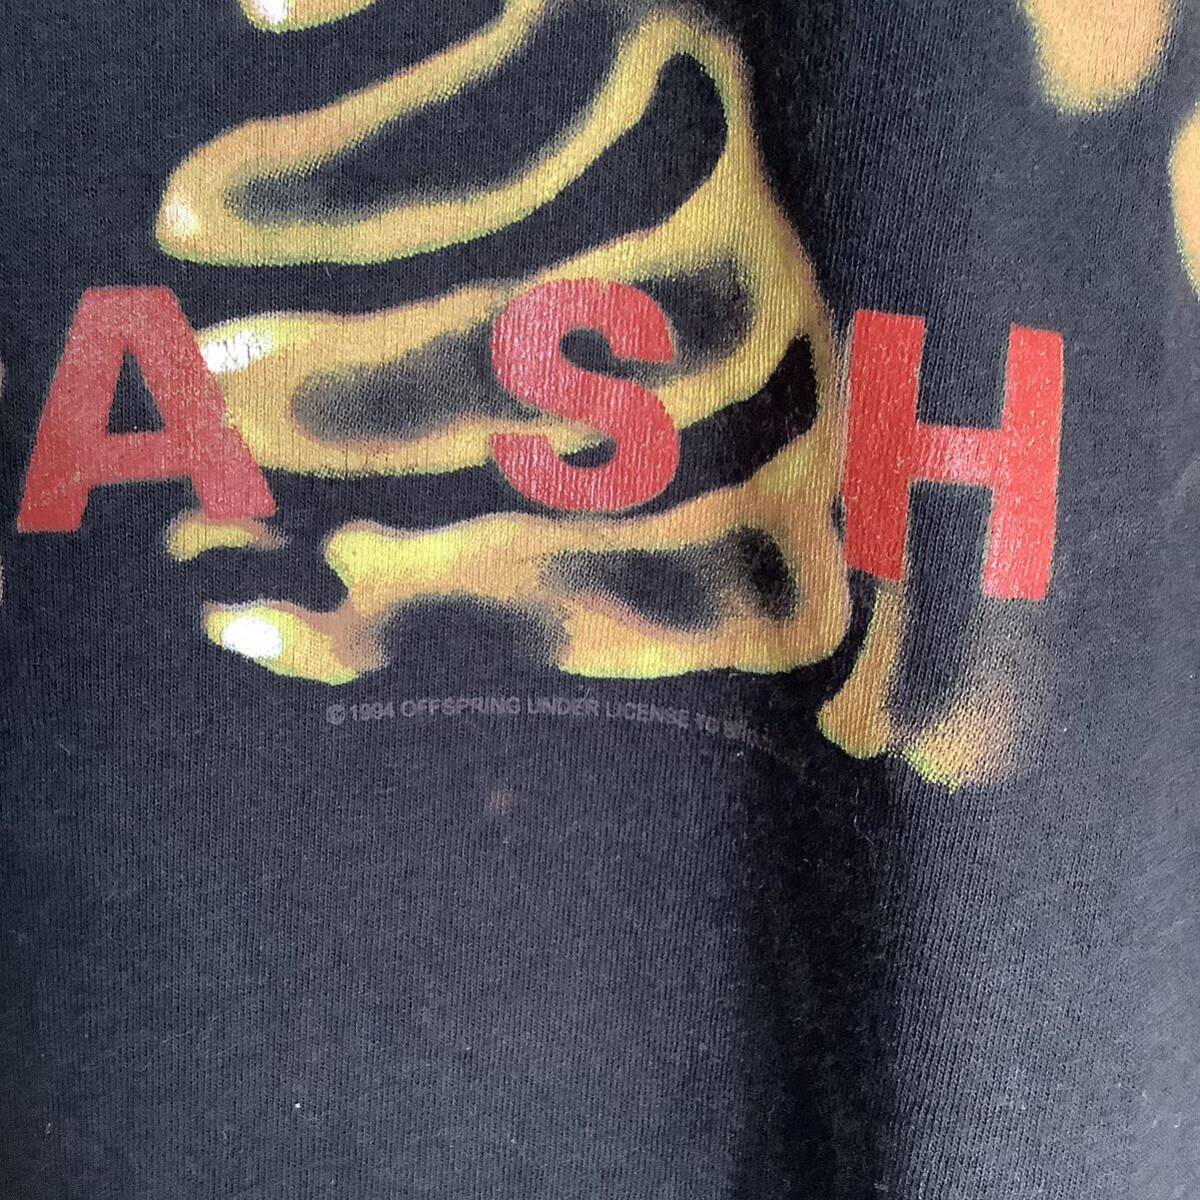  в это время было использовано 1994 OFFSPRING альбом Smash Brockum производства Vintage футболка 80s 90s блокировка частота Alterna tib